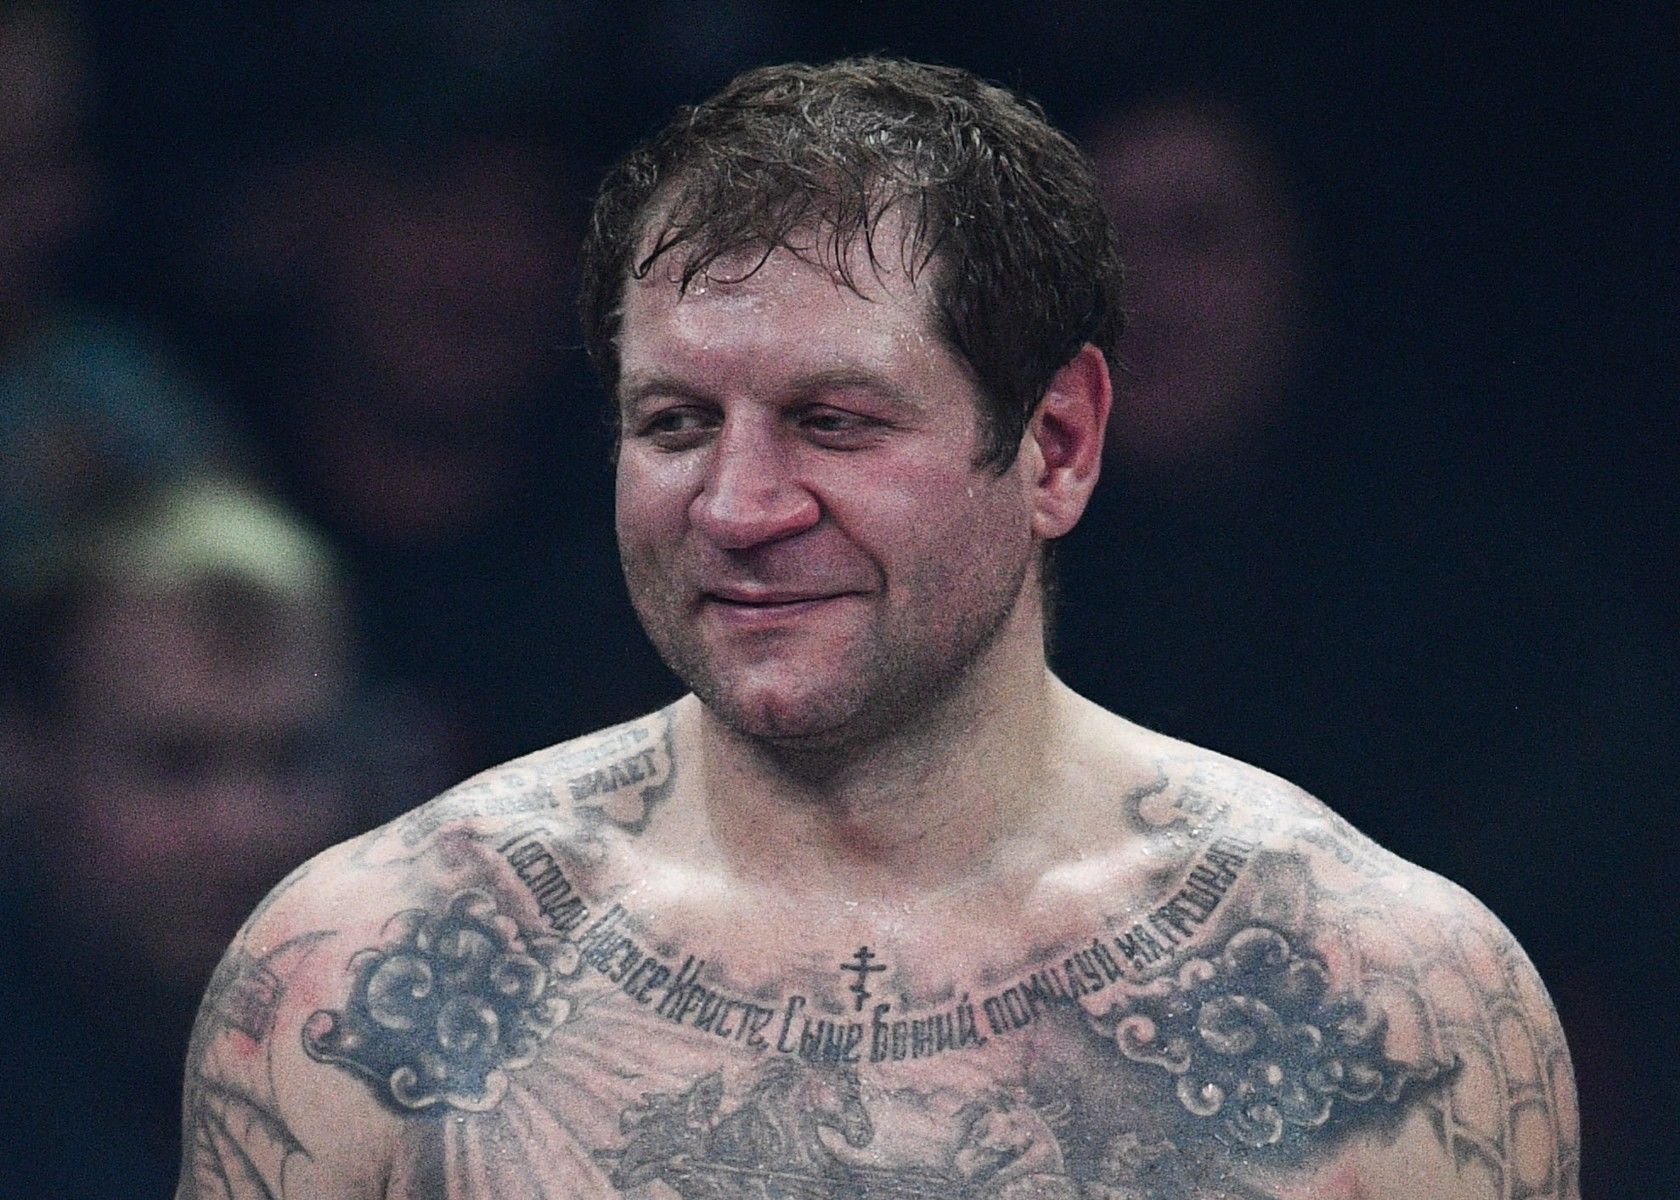 Боец MMA Тарасов рассказал о серьезных проблемах Александра Емельяненко с алкоголем